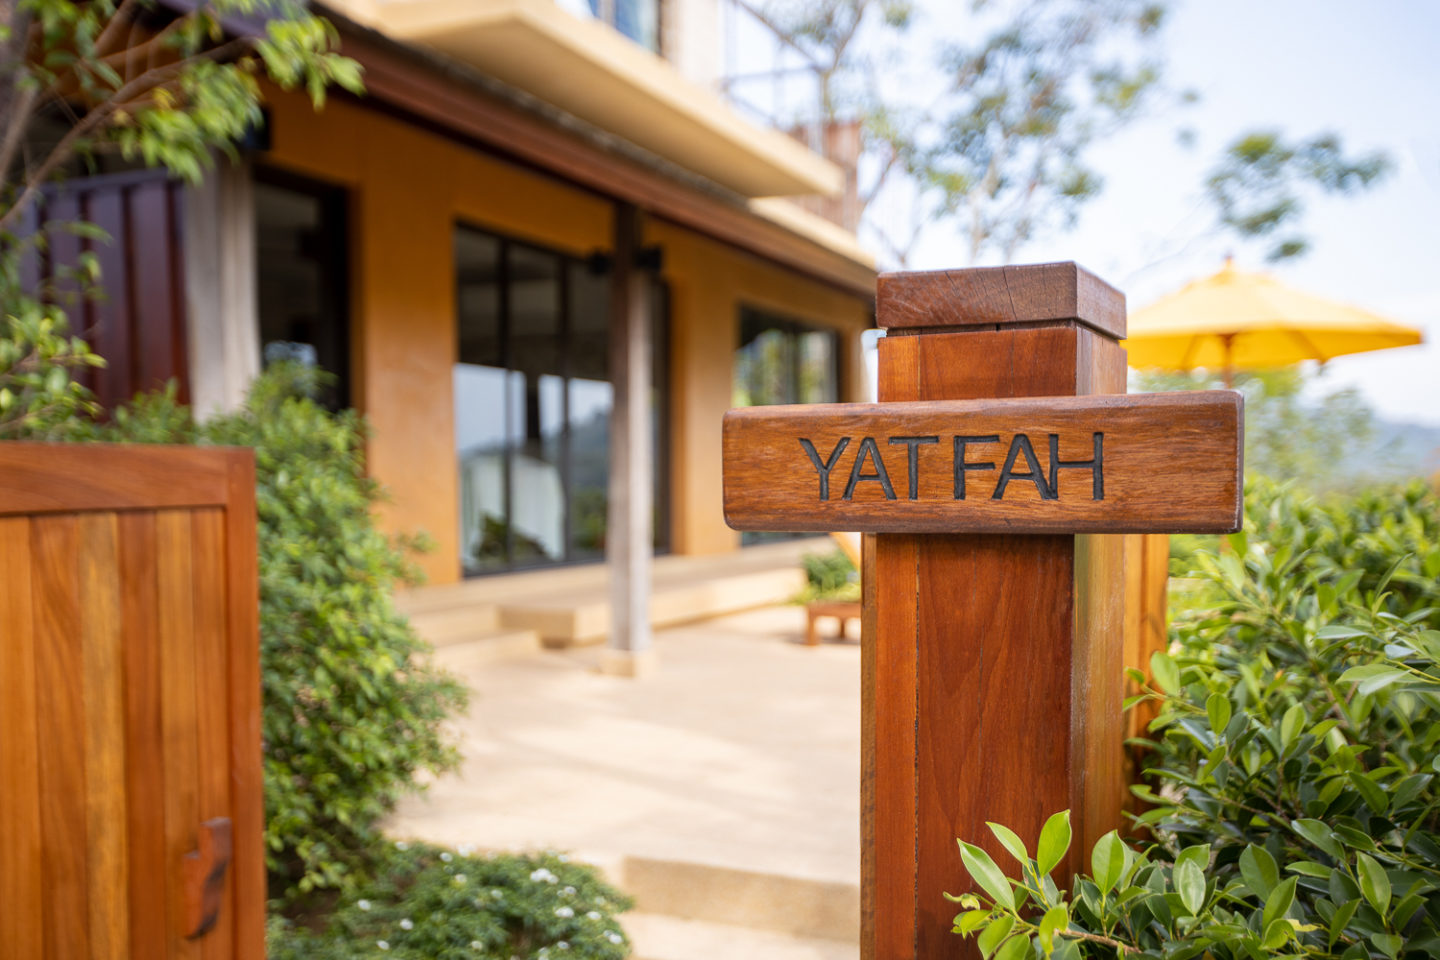 yaonoi villa yat fah entrance